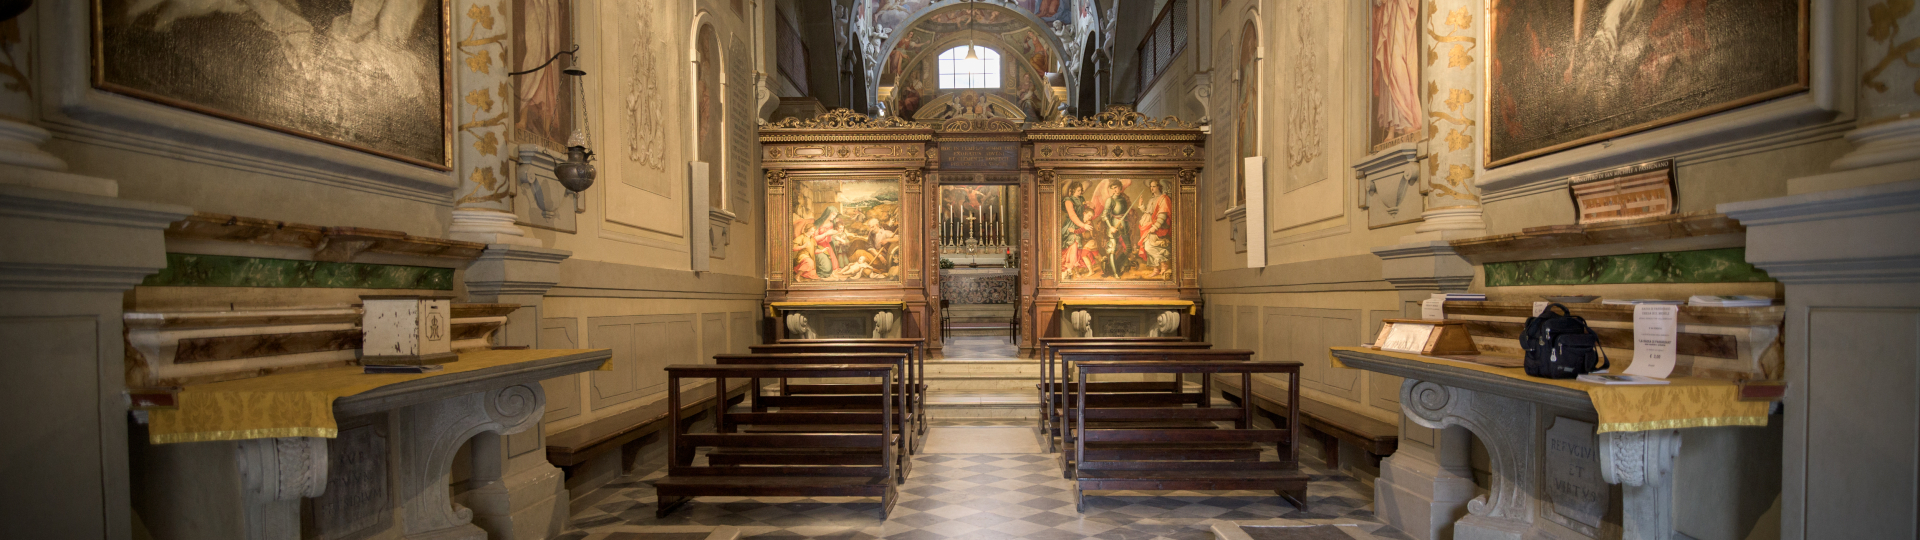 Abbazia di San Michele Arcangelo a Passignano